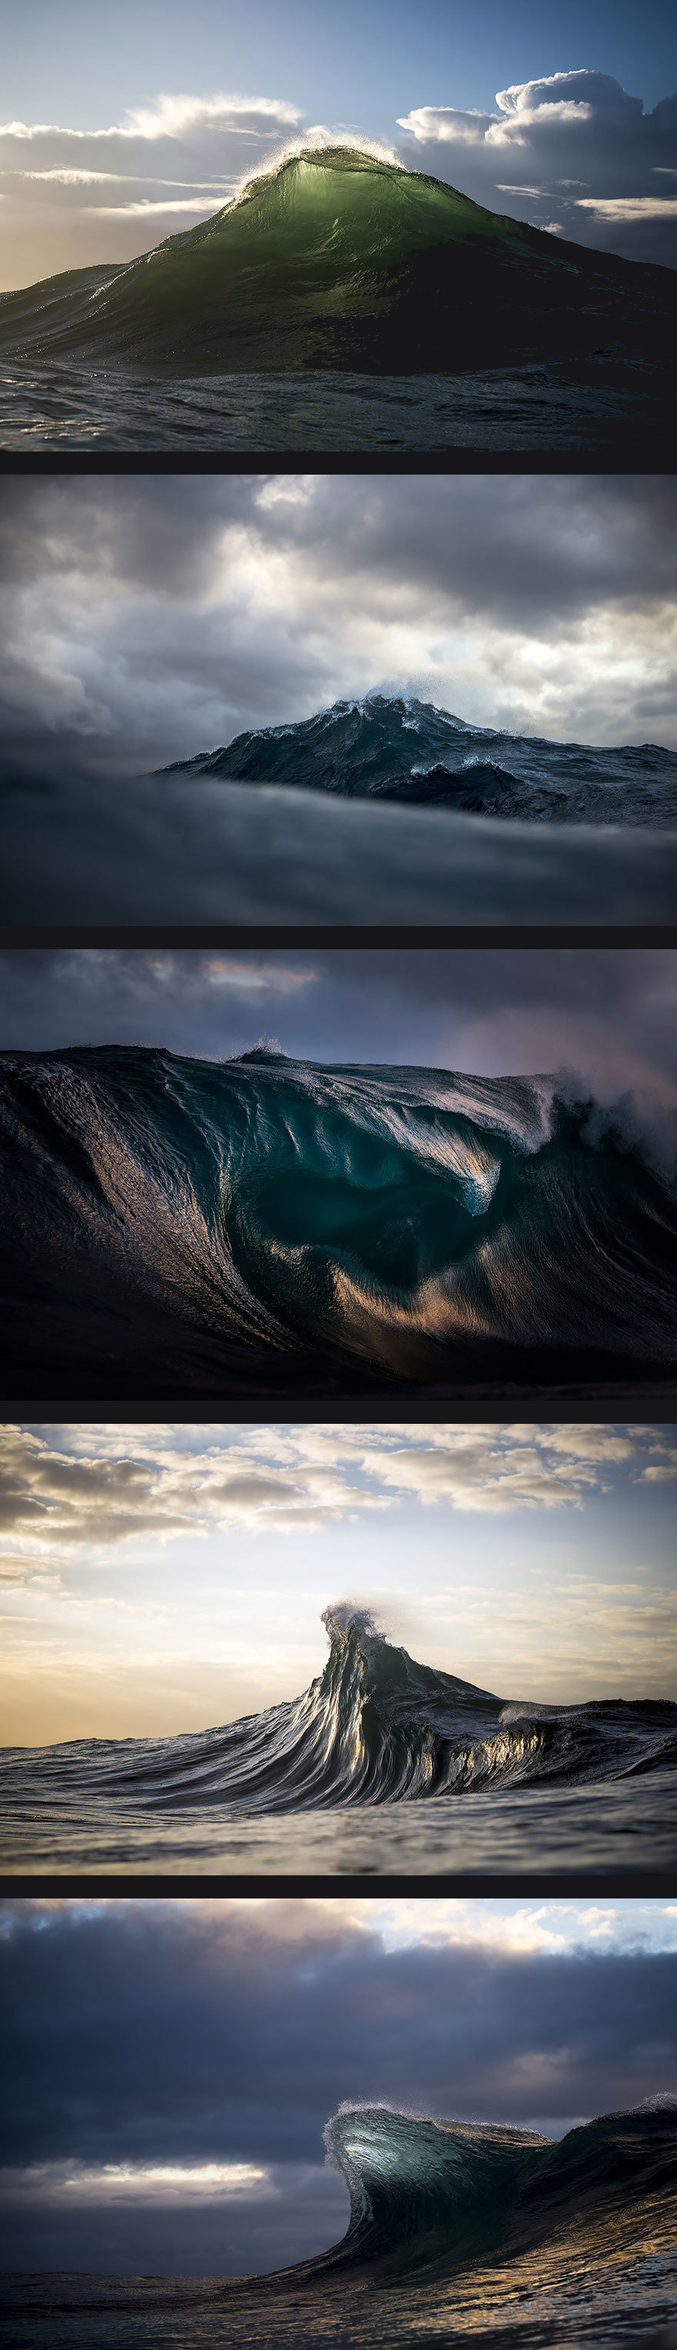 « Des montagnes d’eau » est une série du photographe australien Ray Collins. Passionné par les vagues depuis 2007, il capture l’instant fatidique où celles-ci s’apprêtent à disparaître dans la mer.